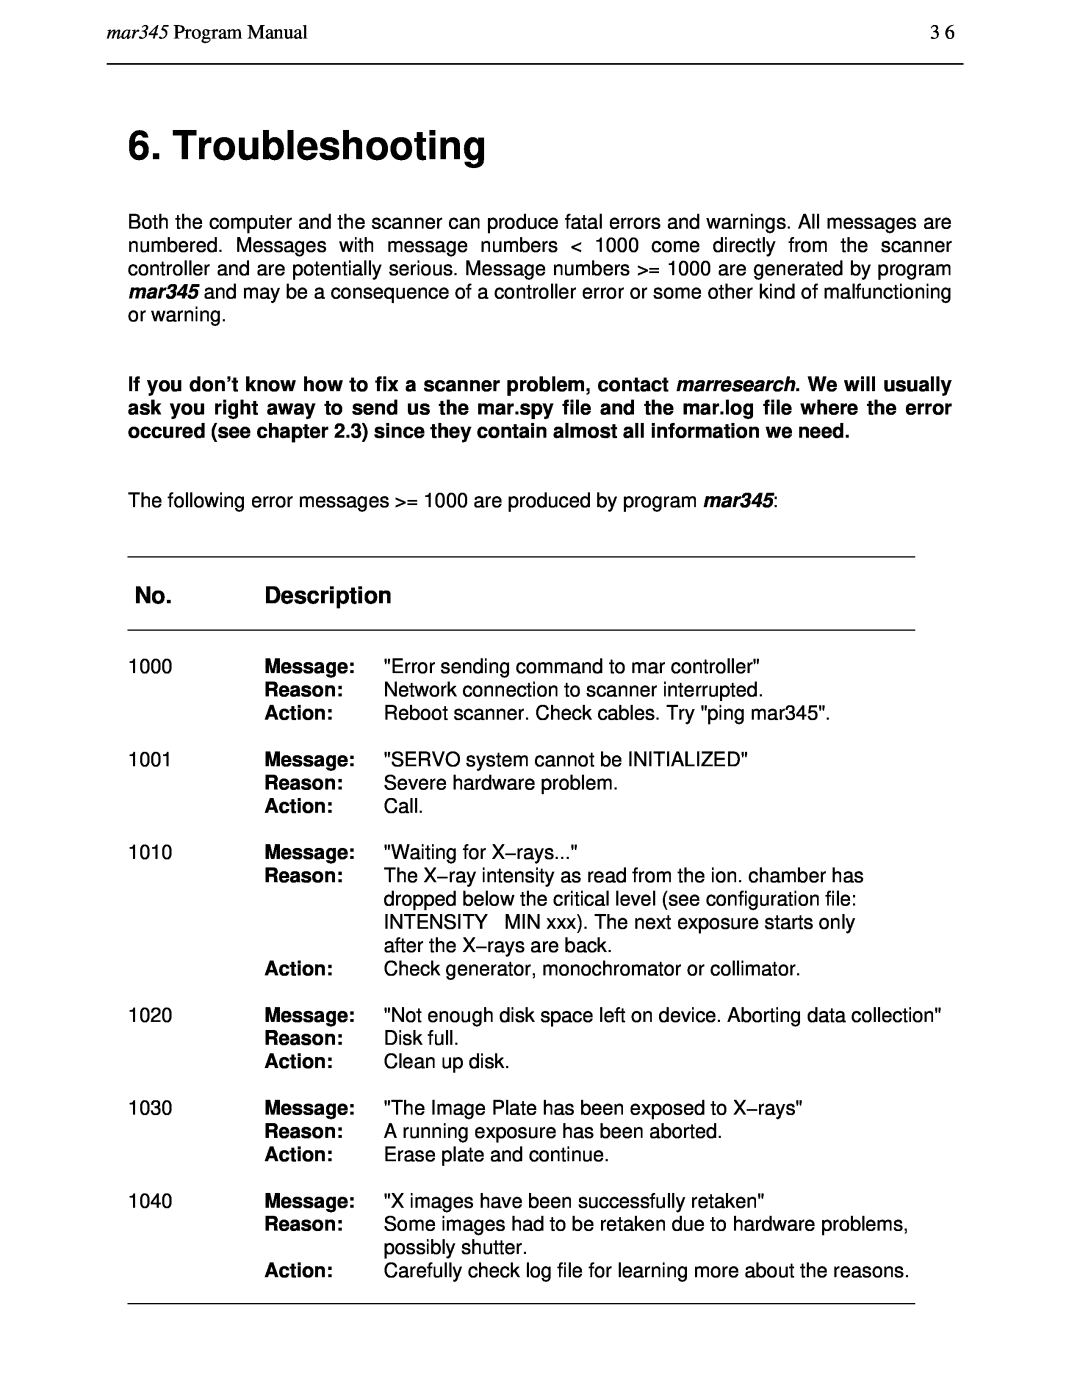 Compaq manual Troubleshooting, No. Description, mar345 Program Manual 